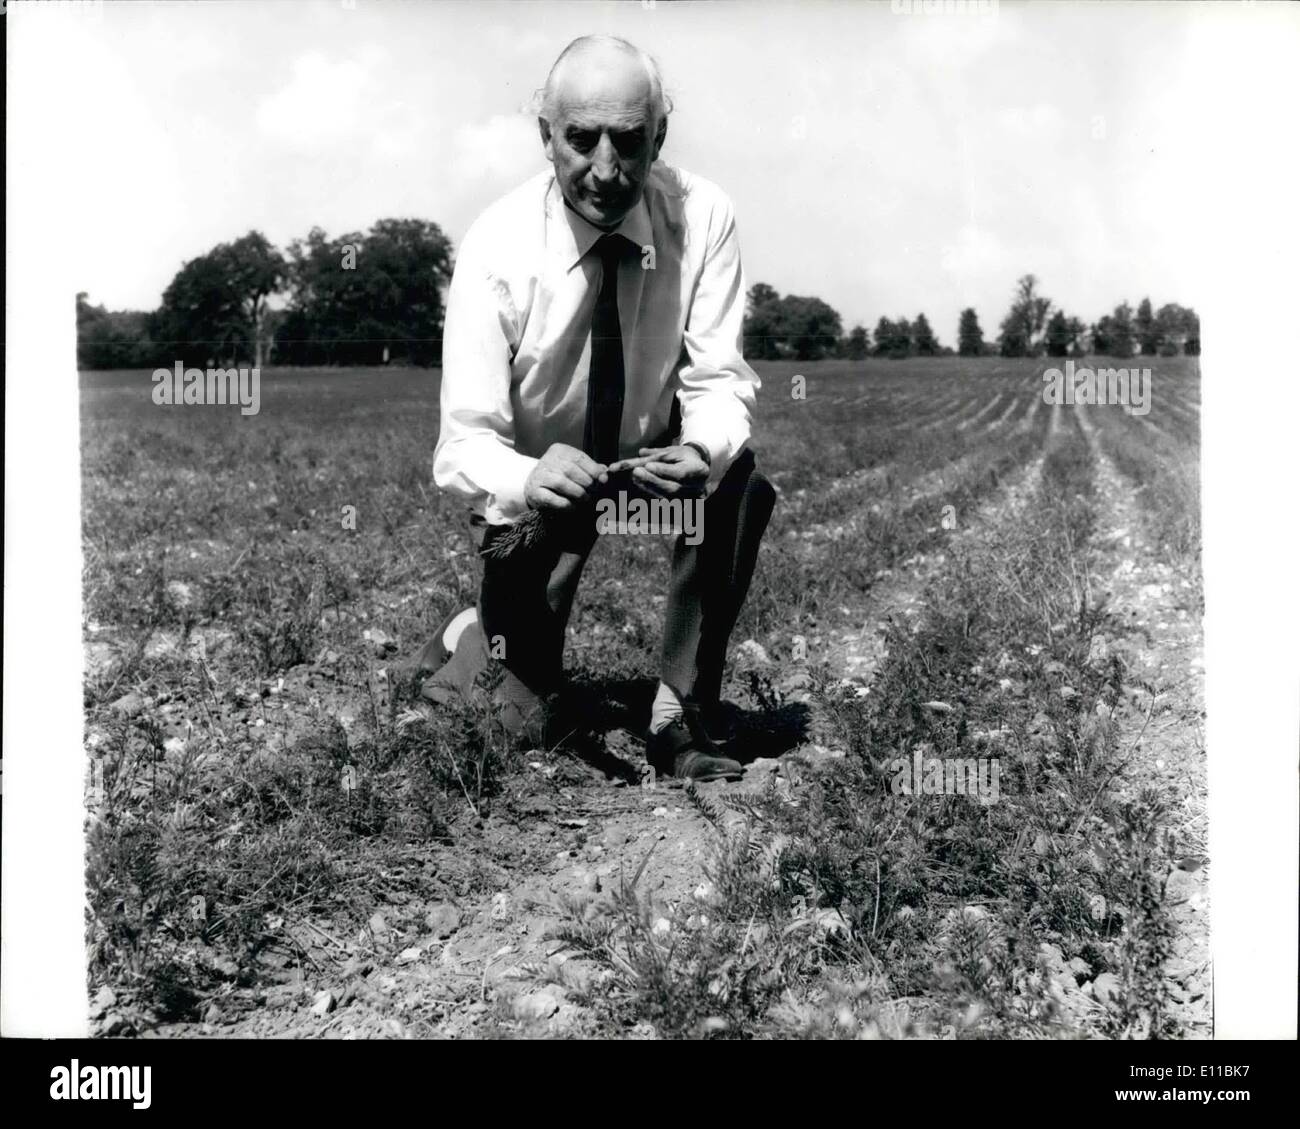 08 août, 1976 - La sécheresse va mettre l'alimentation à la hausse indique que le ministre de l'agriculture : un avertissement de pénurie alimentaire et de la hausse des prix à cause de la sécheresse a été donner hier par M. Peart, Ministre de l'agriculture, lors d'une tournée des régions agricoles desséchées. Il pensait que la hausse des prix des légumes aurait très bientôt. M. Peart s'exprimait à Bristol à la fin de la première de ses deux jours d'East Anglia, les Midlands de l'Ouest et l'ouest du pays. Photo montre M. Peart, le Ministger agricole, l'examen de la région aride et récolte une carotte de sol poudreux au champ Hall Farm, Suffolk, Euston, hier. Banque D'Images